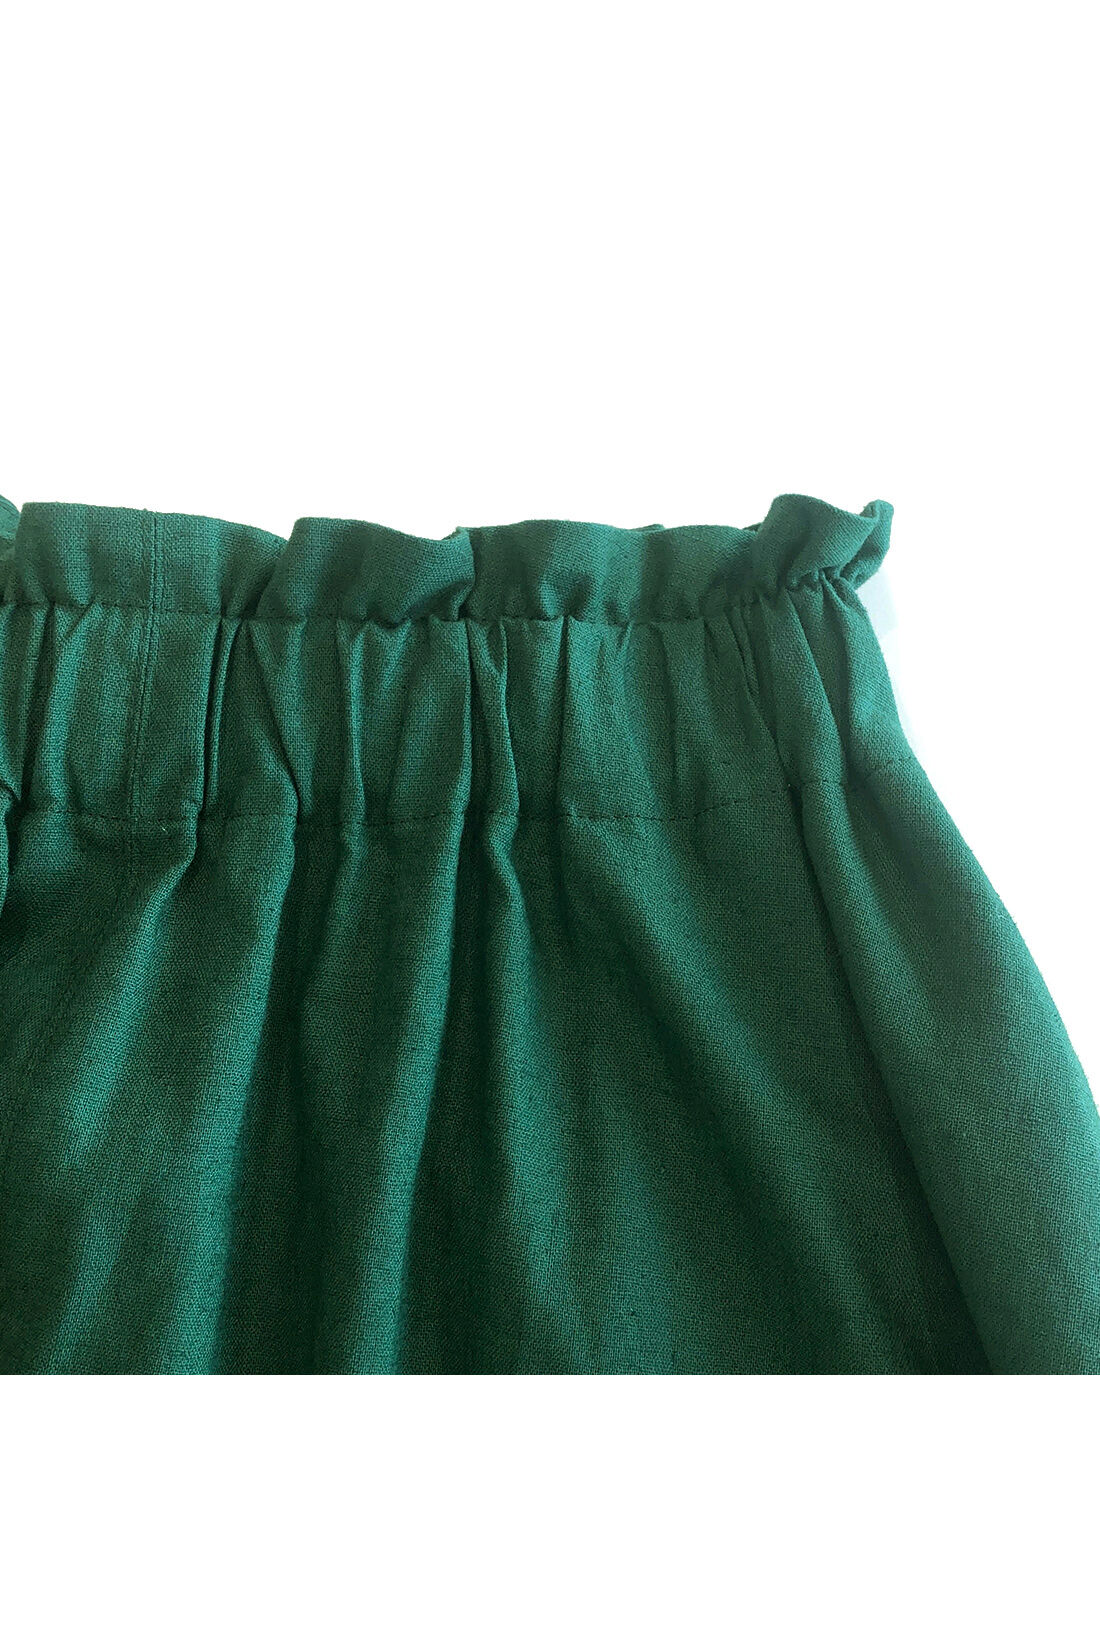 シロップ．|スカートみたいな ちょい厚コットンリネンのボリュームガウチョパンツ〈フォレストグリーン〉